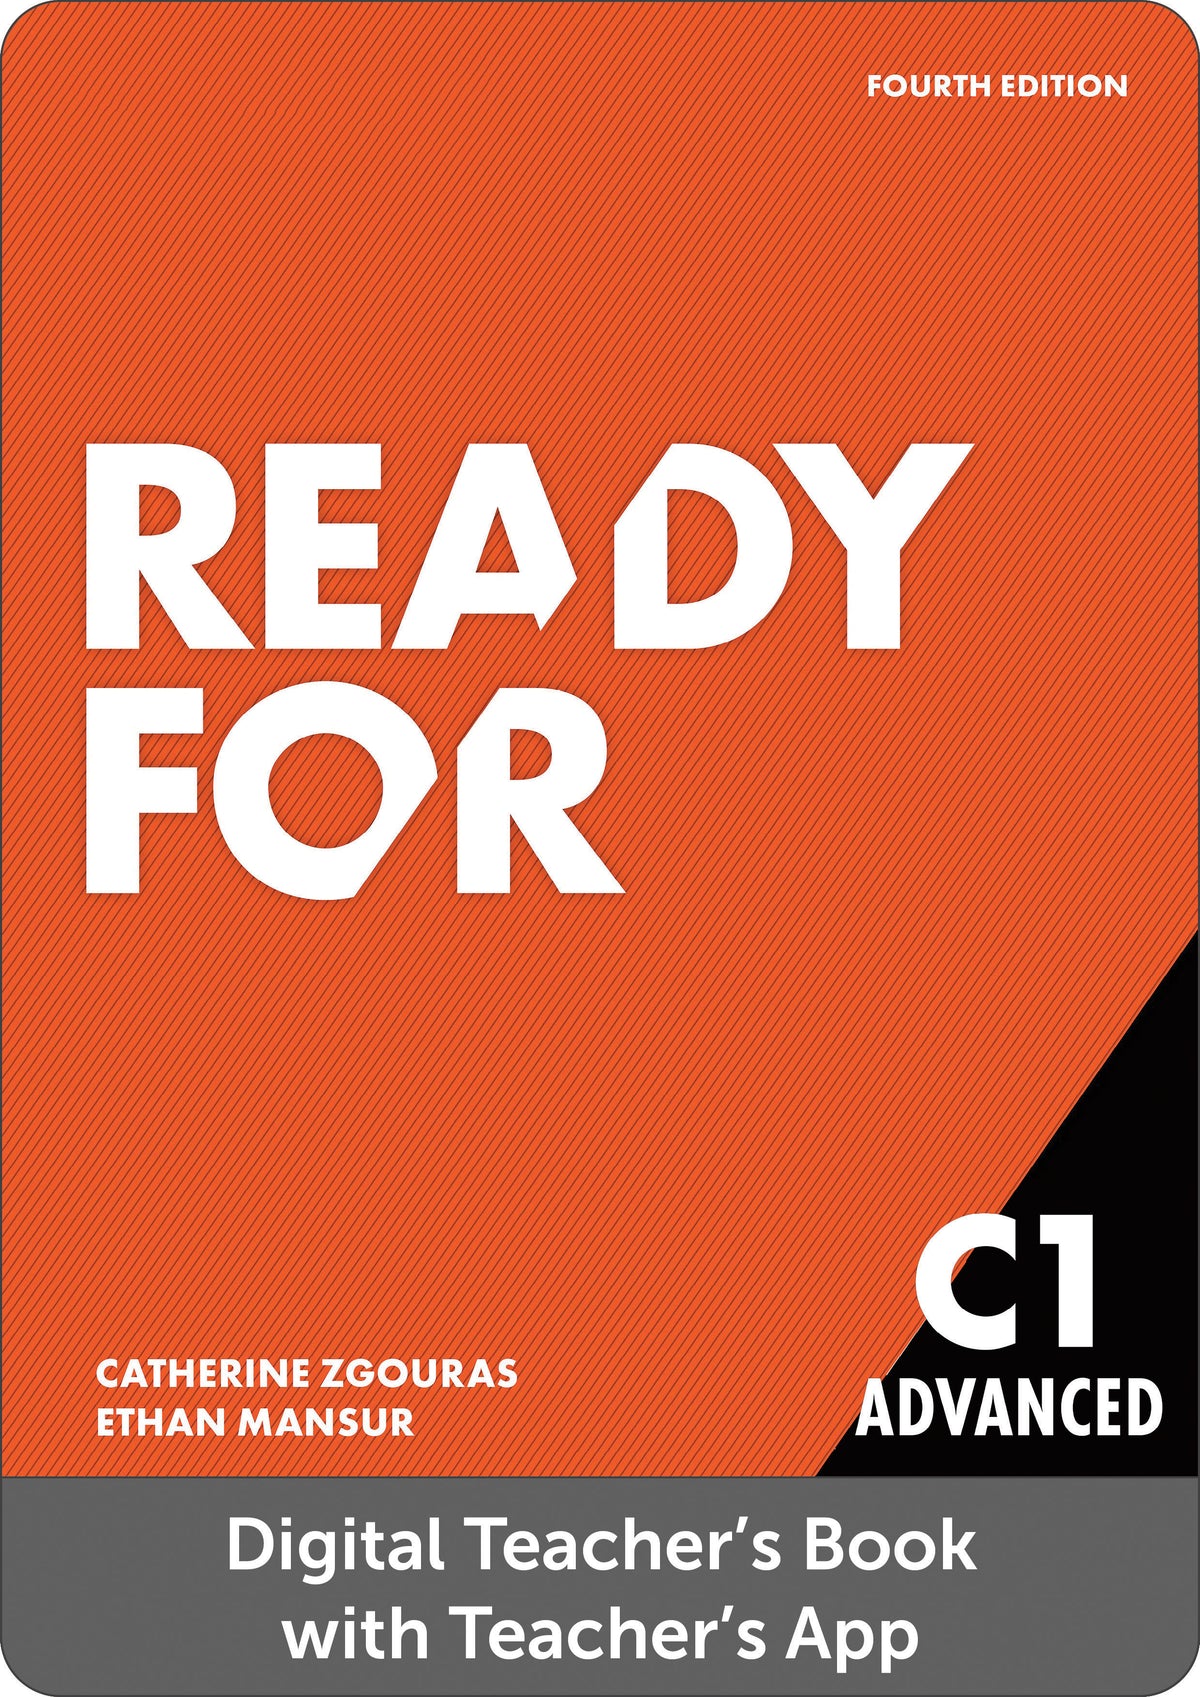 Ready for C1 Advanced 4th Edition C1 - Digital Teacher's Book with Tea ...